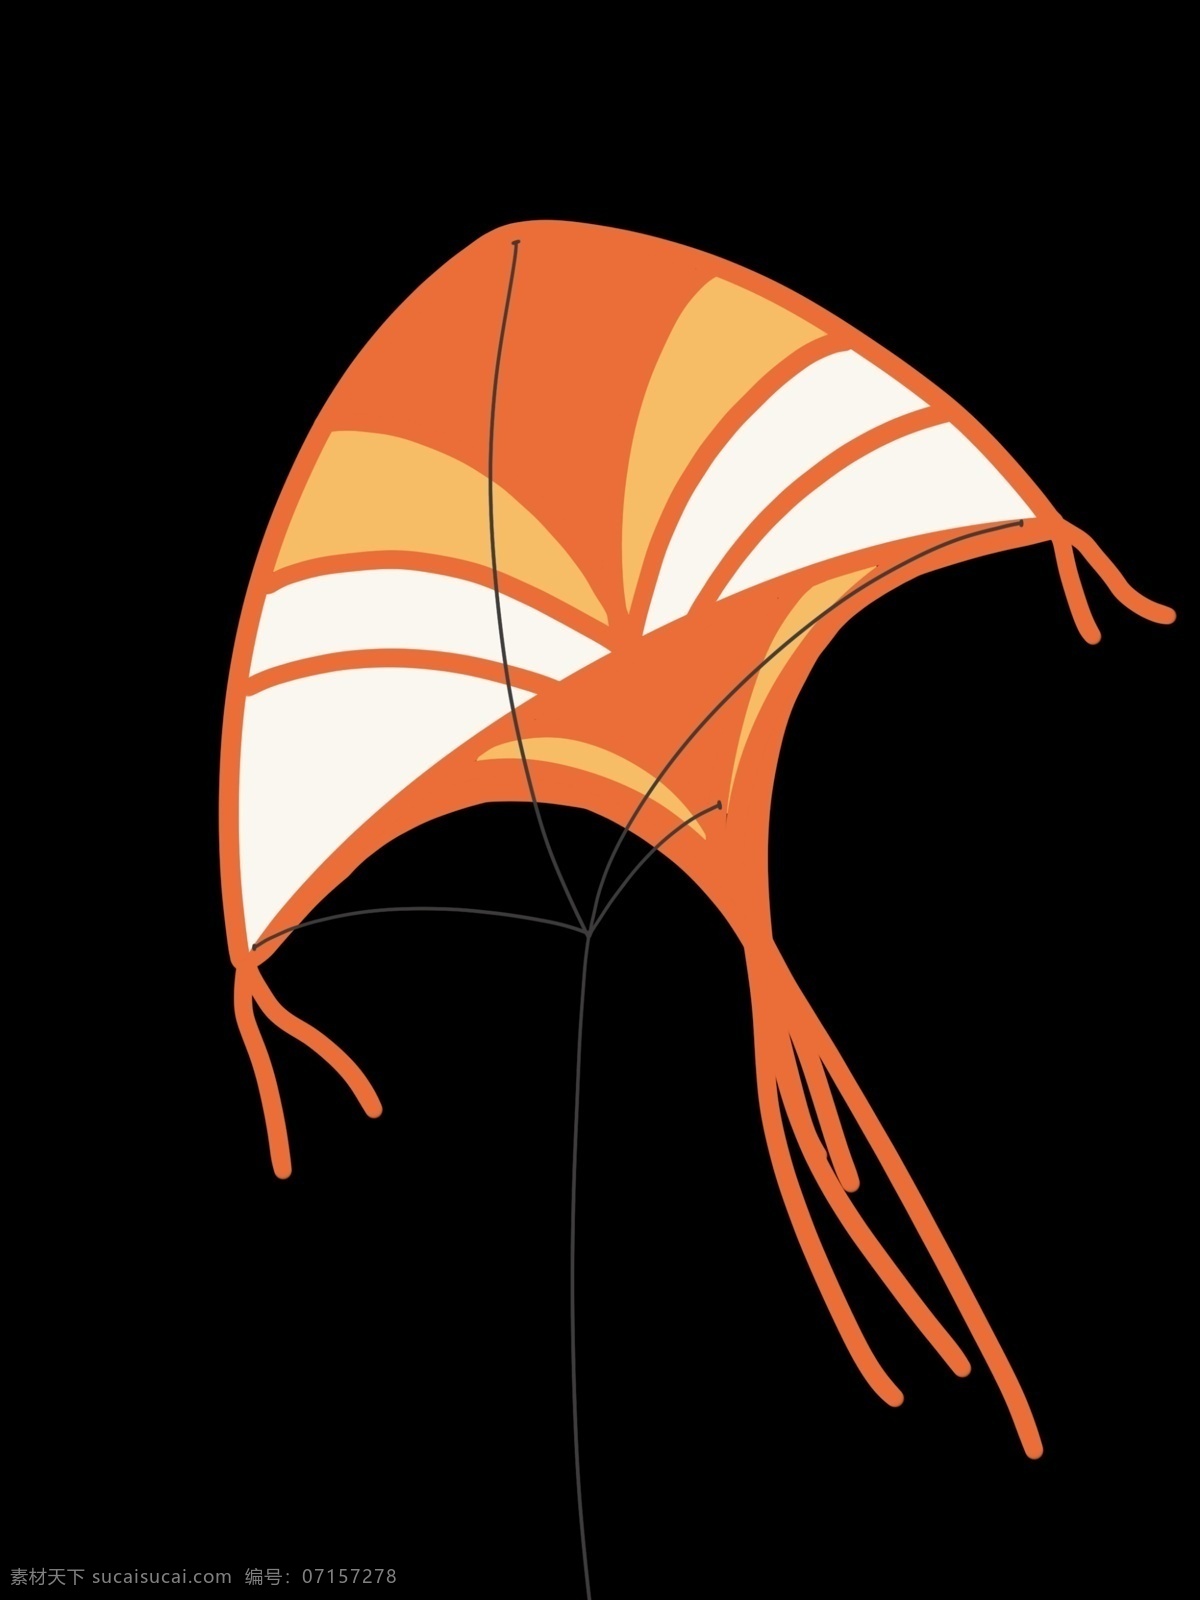 橙色 精美 风筝 插画 橙色的风筝 卡通风筝插画 白色的花纹 半圆形 精美的风筝 风筝插画